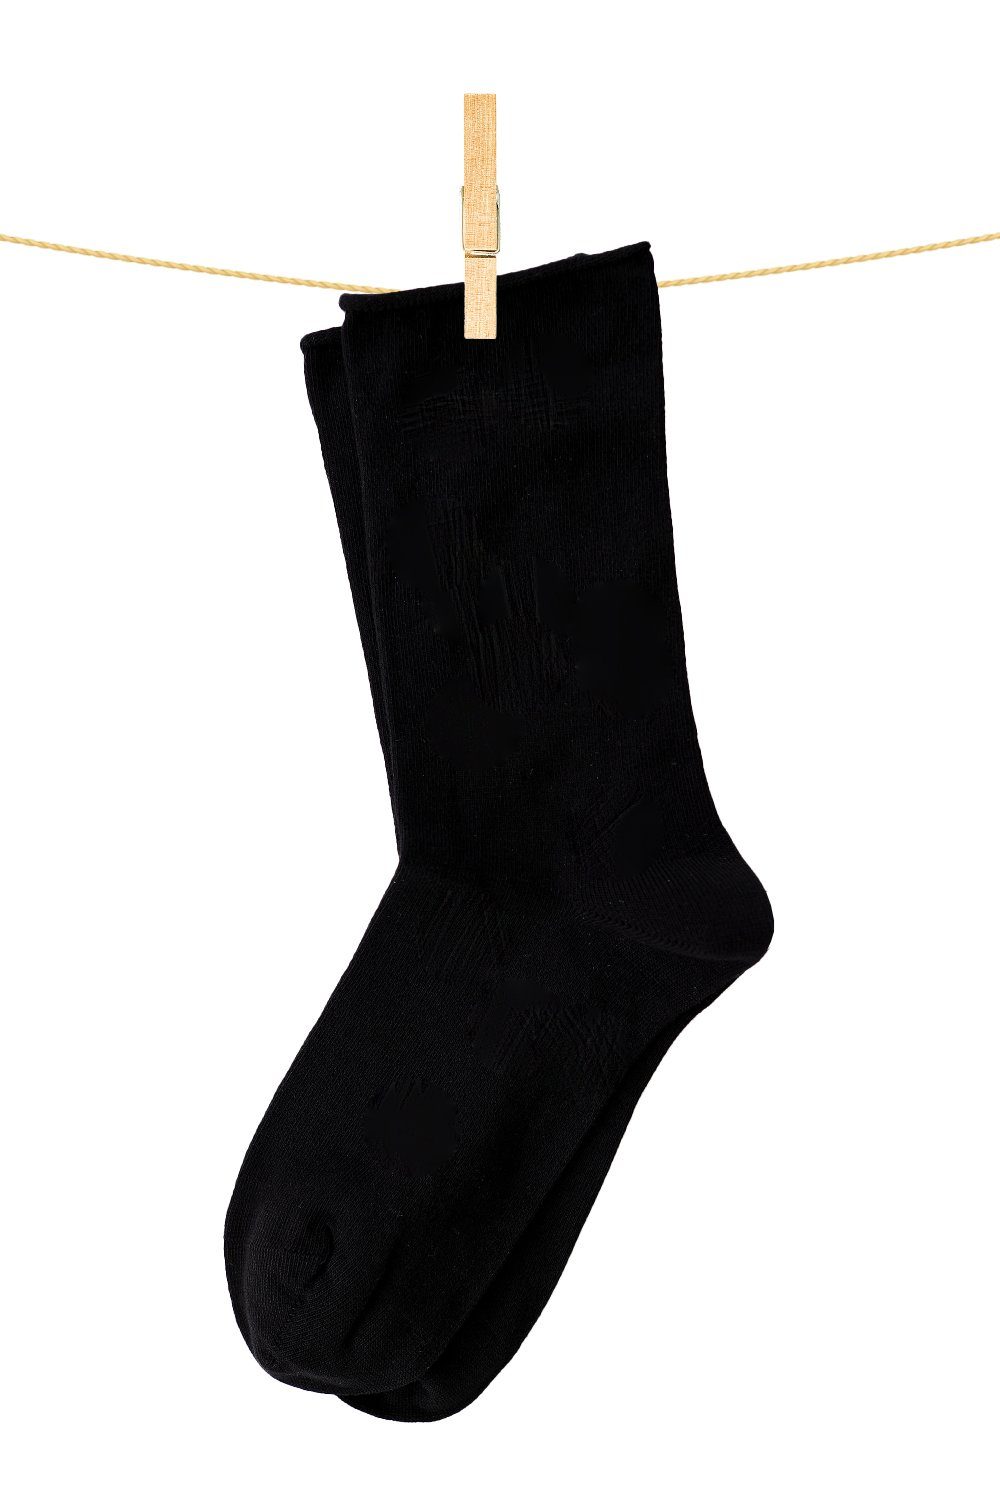 Uni Longsocks schwarz Socken Crönert 18600